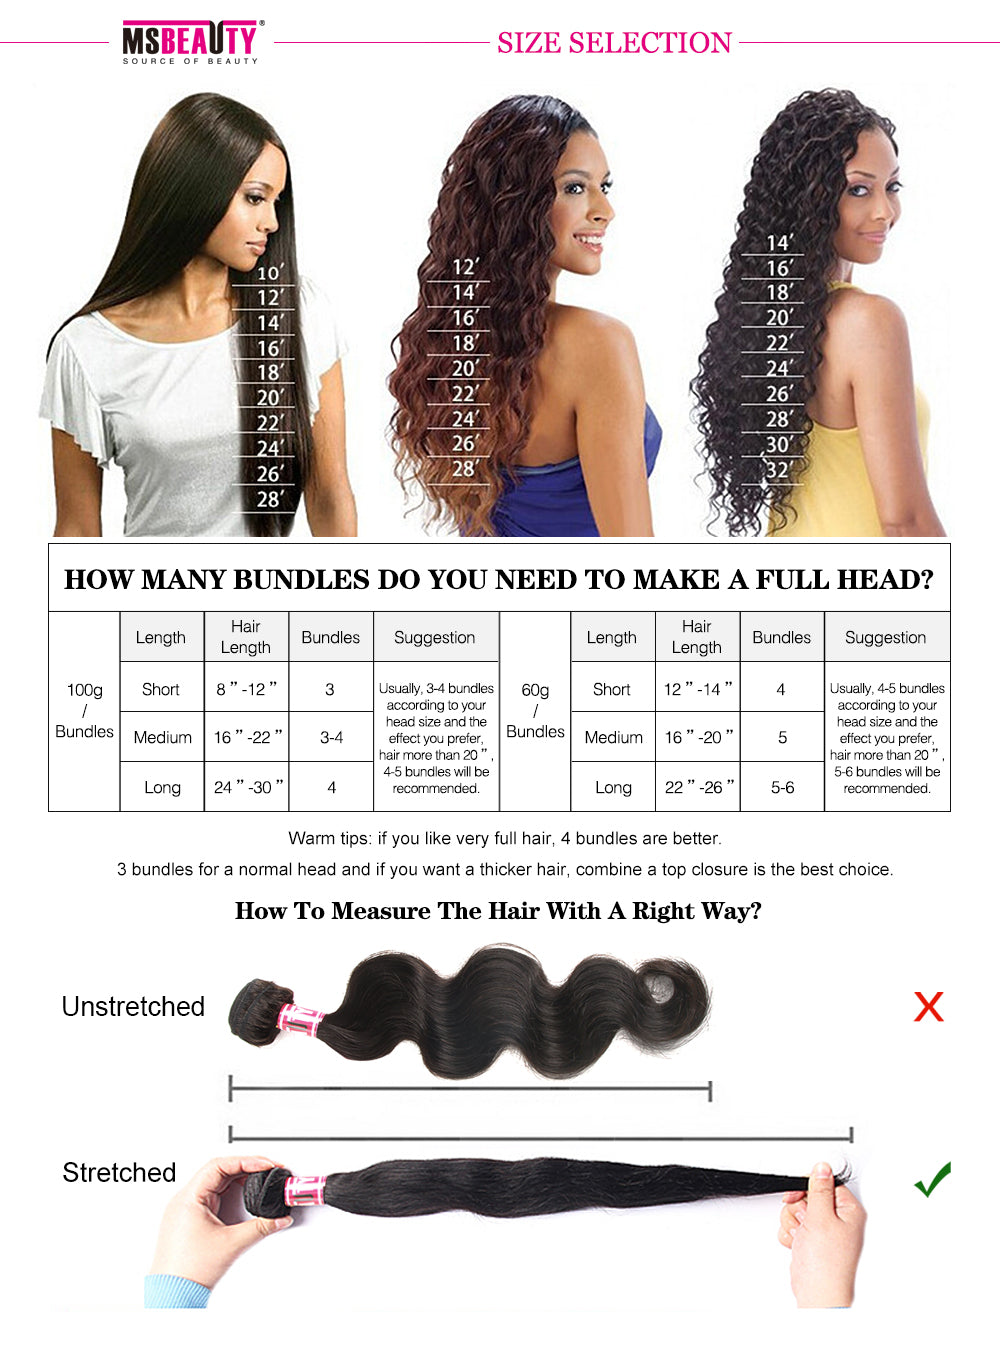 Msbeauty Peruvian Silky Straight 3 Bundles Deals Natural Human Hair Weave Grade 8A 8"-30" - MSBEAUTY HAIR